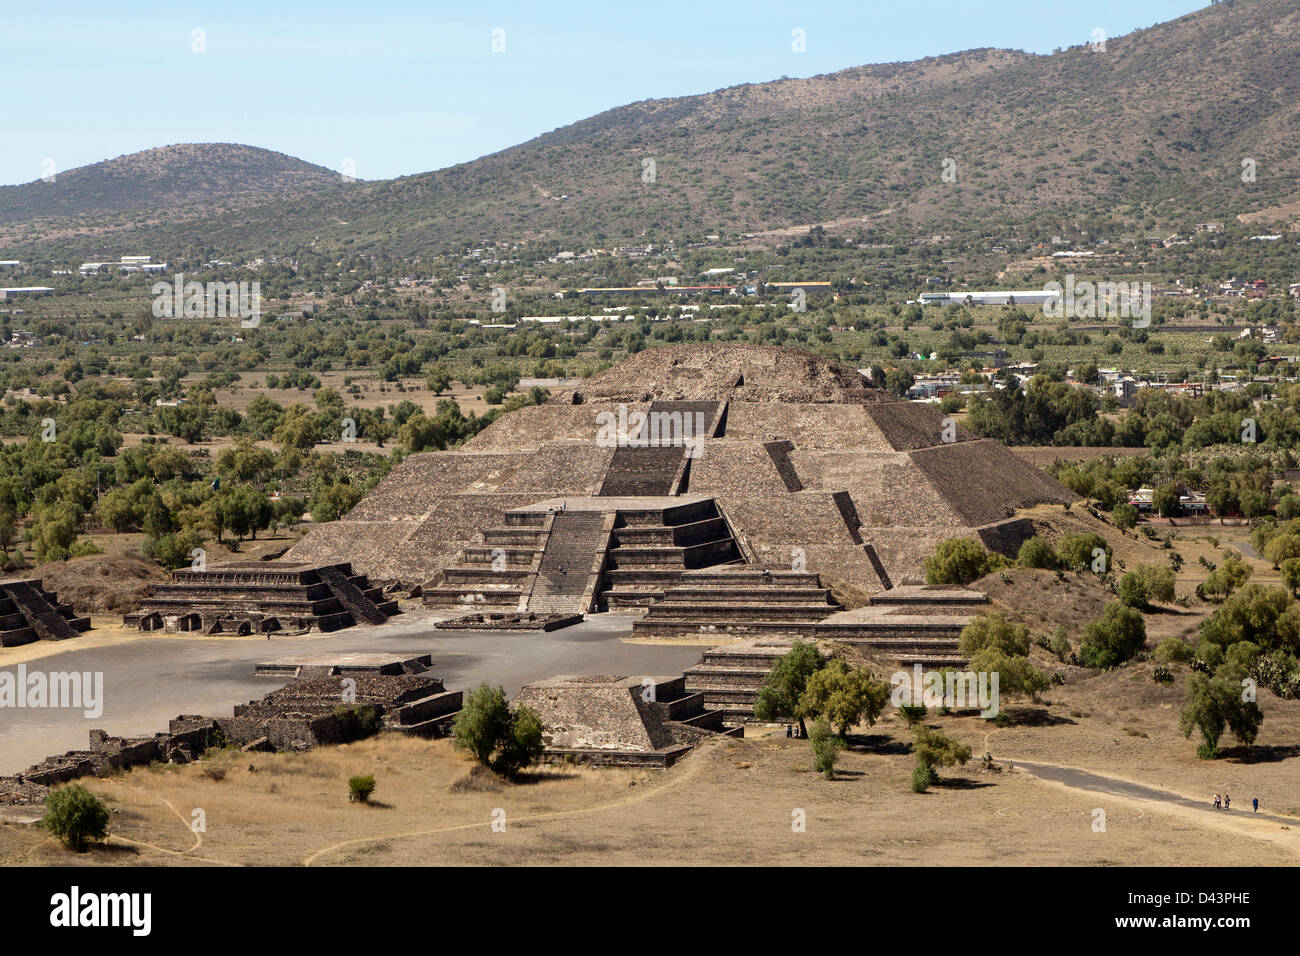 Les touristes visitant les pyramides de Teotihuacan au Mexique. Ils font  partie du site archéologique dans le bassin de Mexico Photo Stock - Alamy